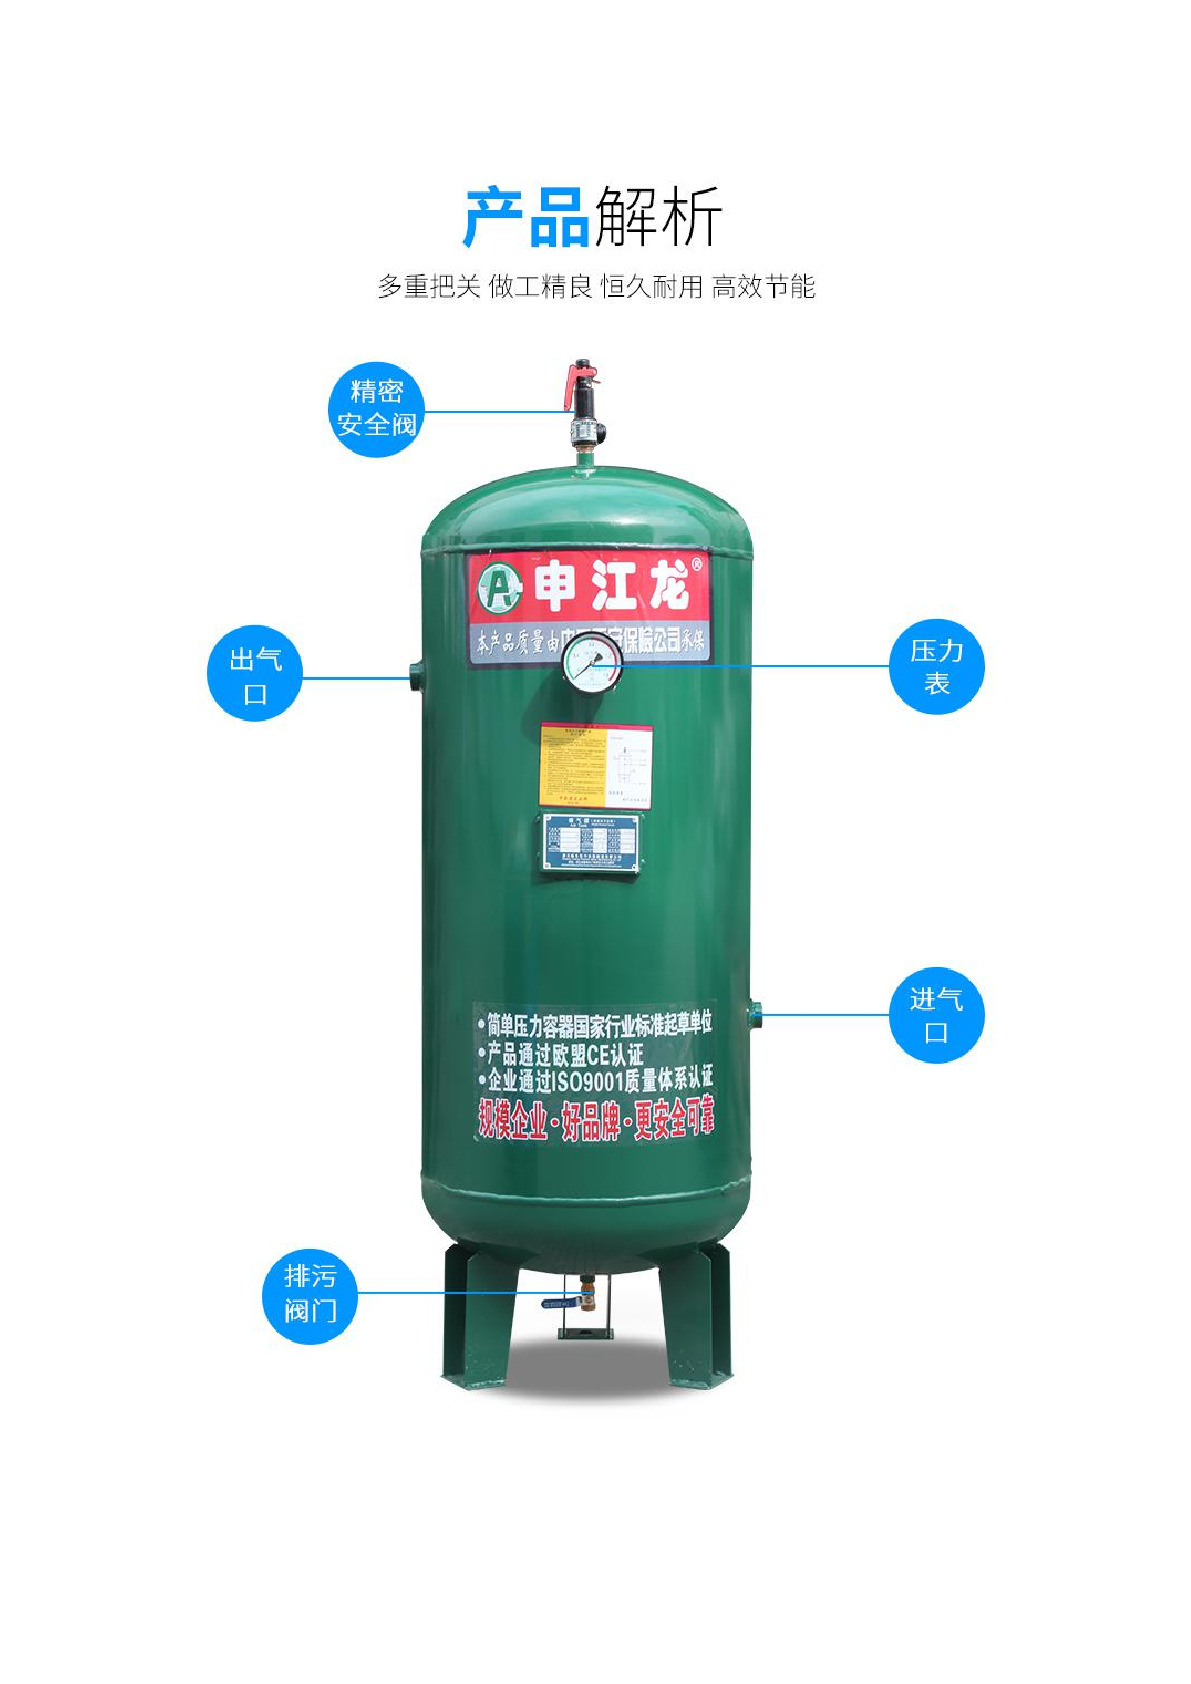 国产申江龙精密安全现货1.0立方储气罐详情图3